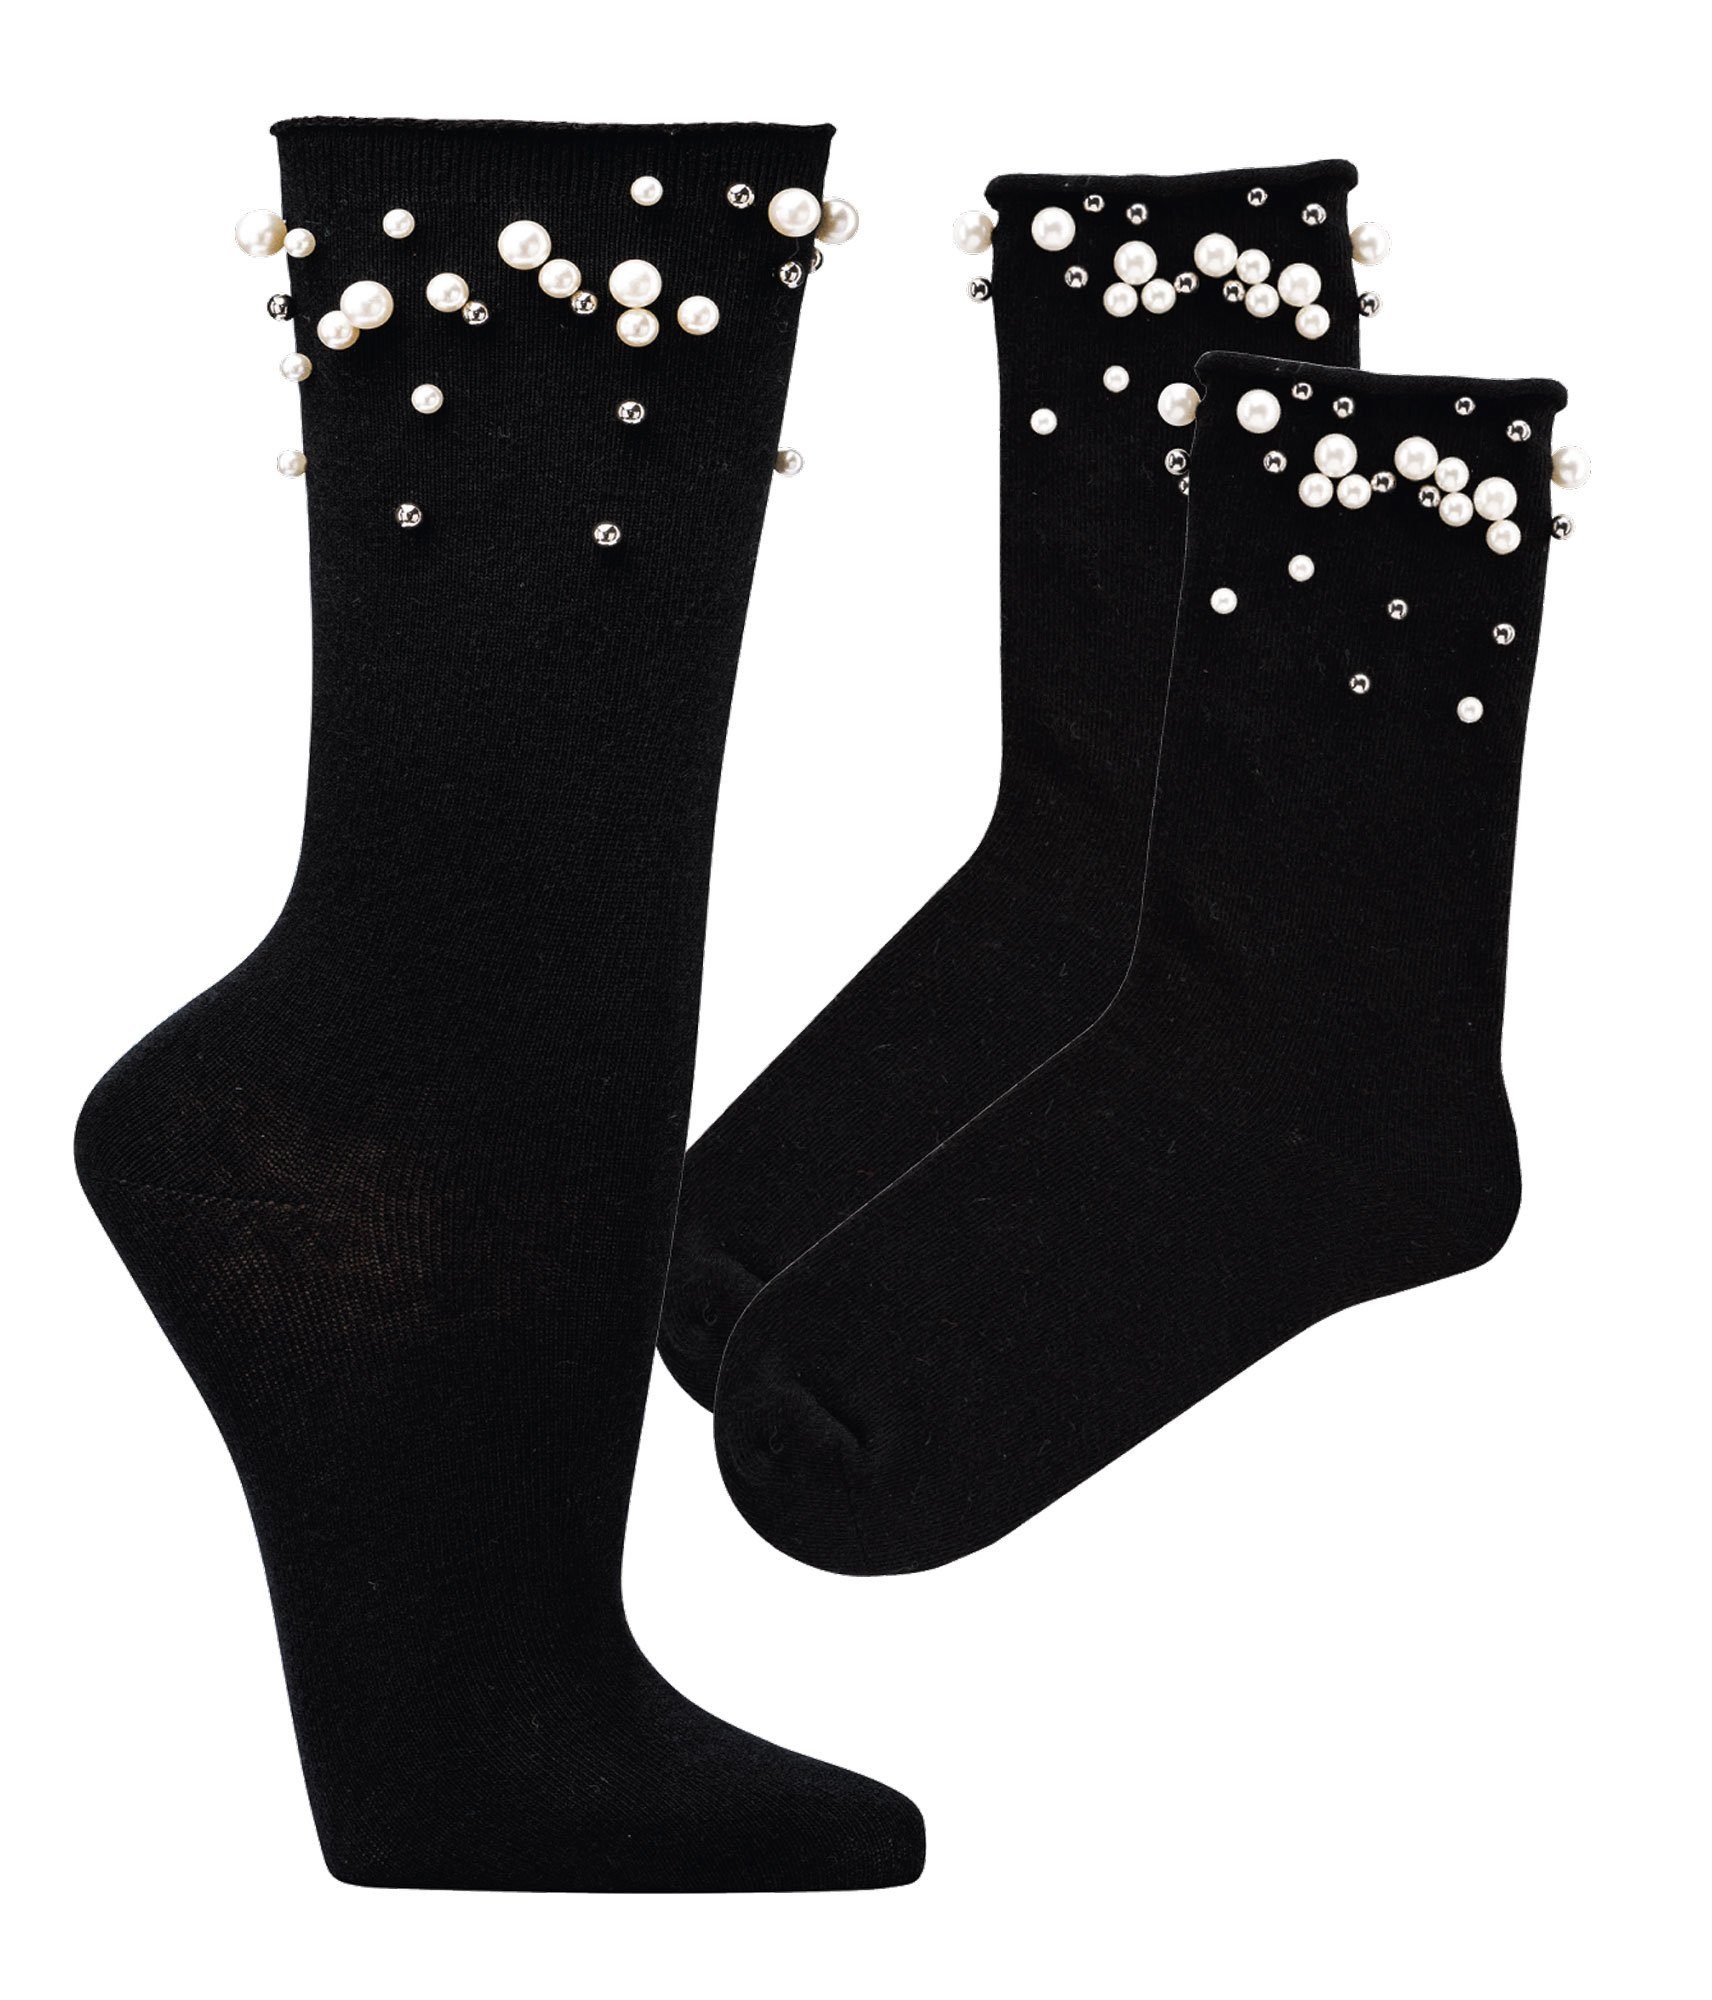 künstlichen (2 verziert Schwarze Perlen Viskose Socken Damen Teenager mit Paar) Wowerat festliche Socken